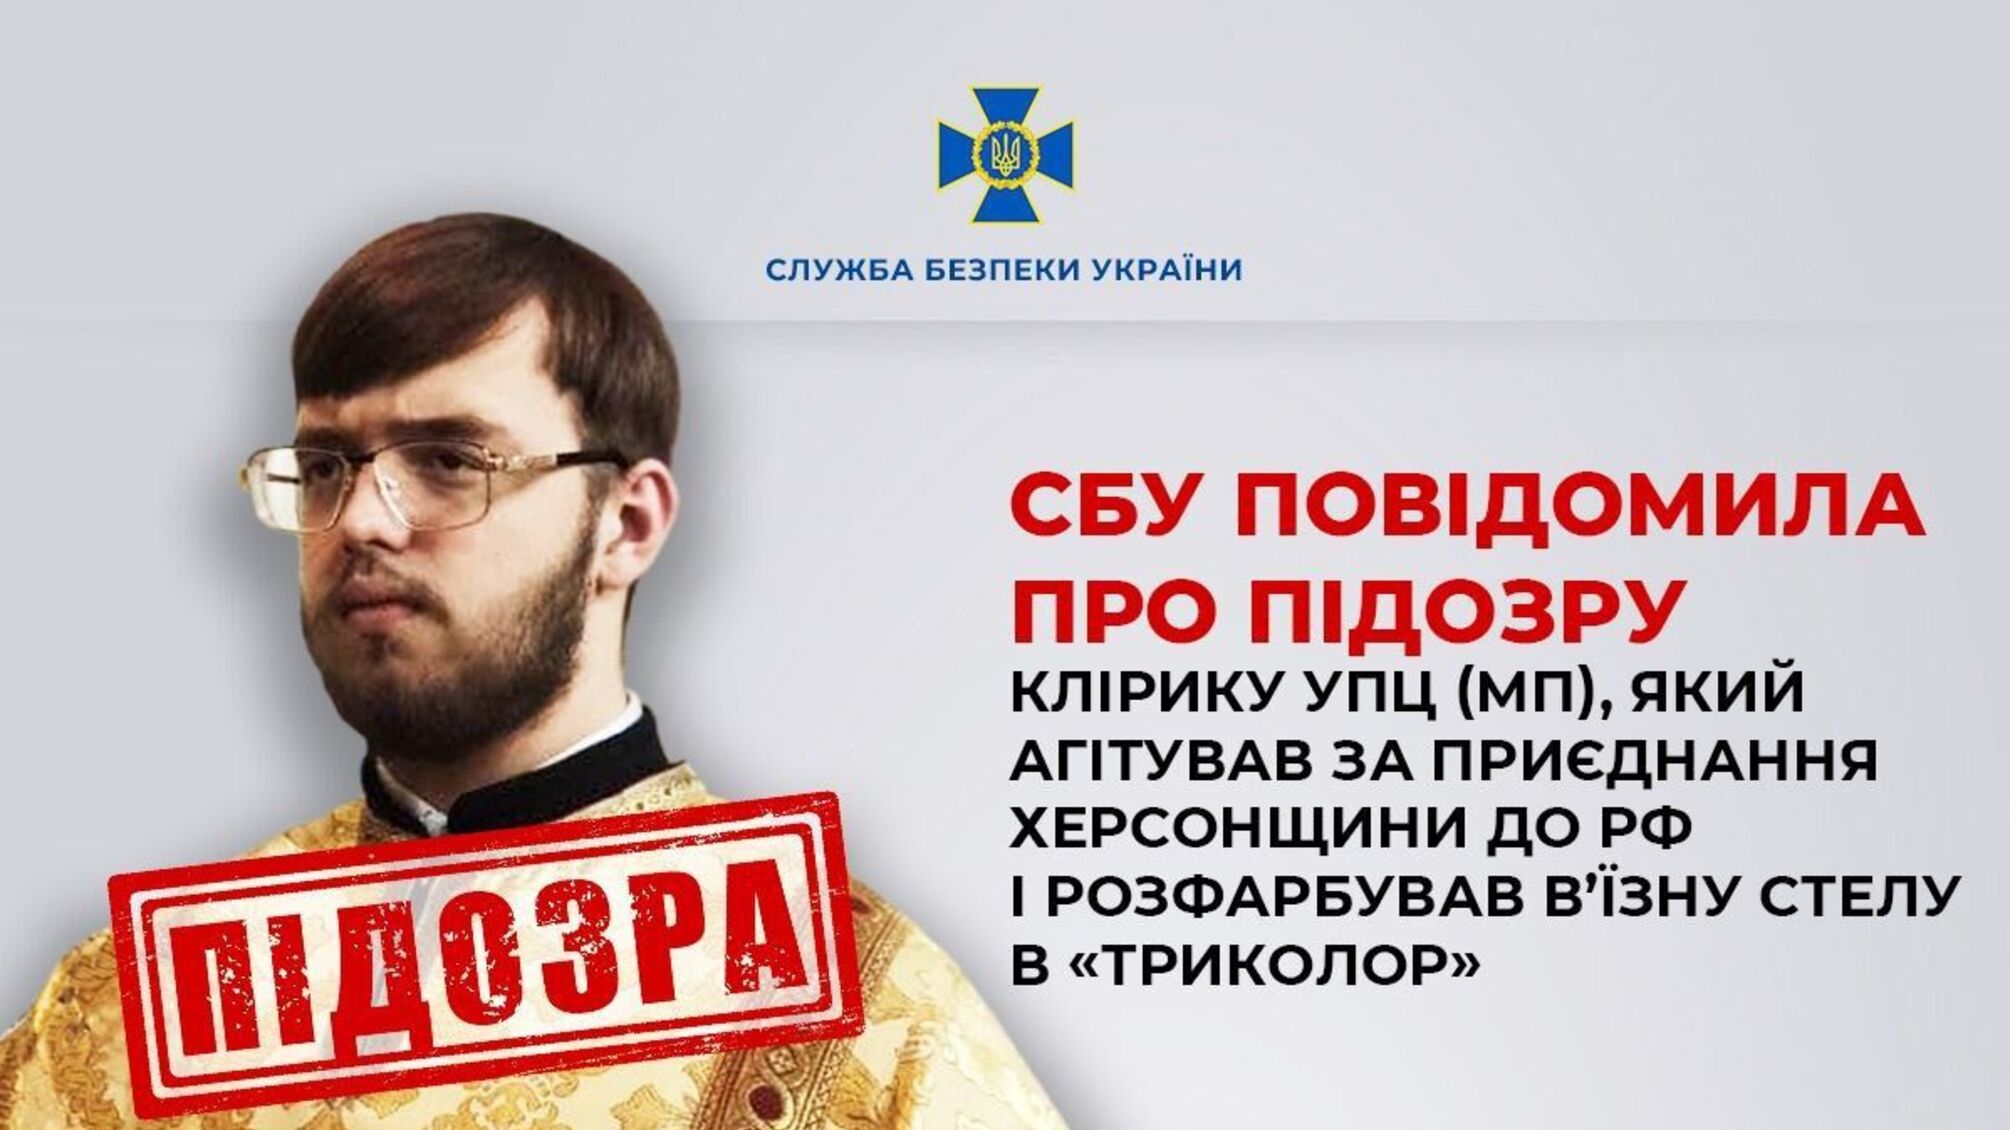 В Херсонской области СБУ объявила подозрение церковному служителю УПЦ(МП)